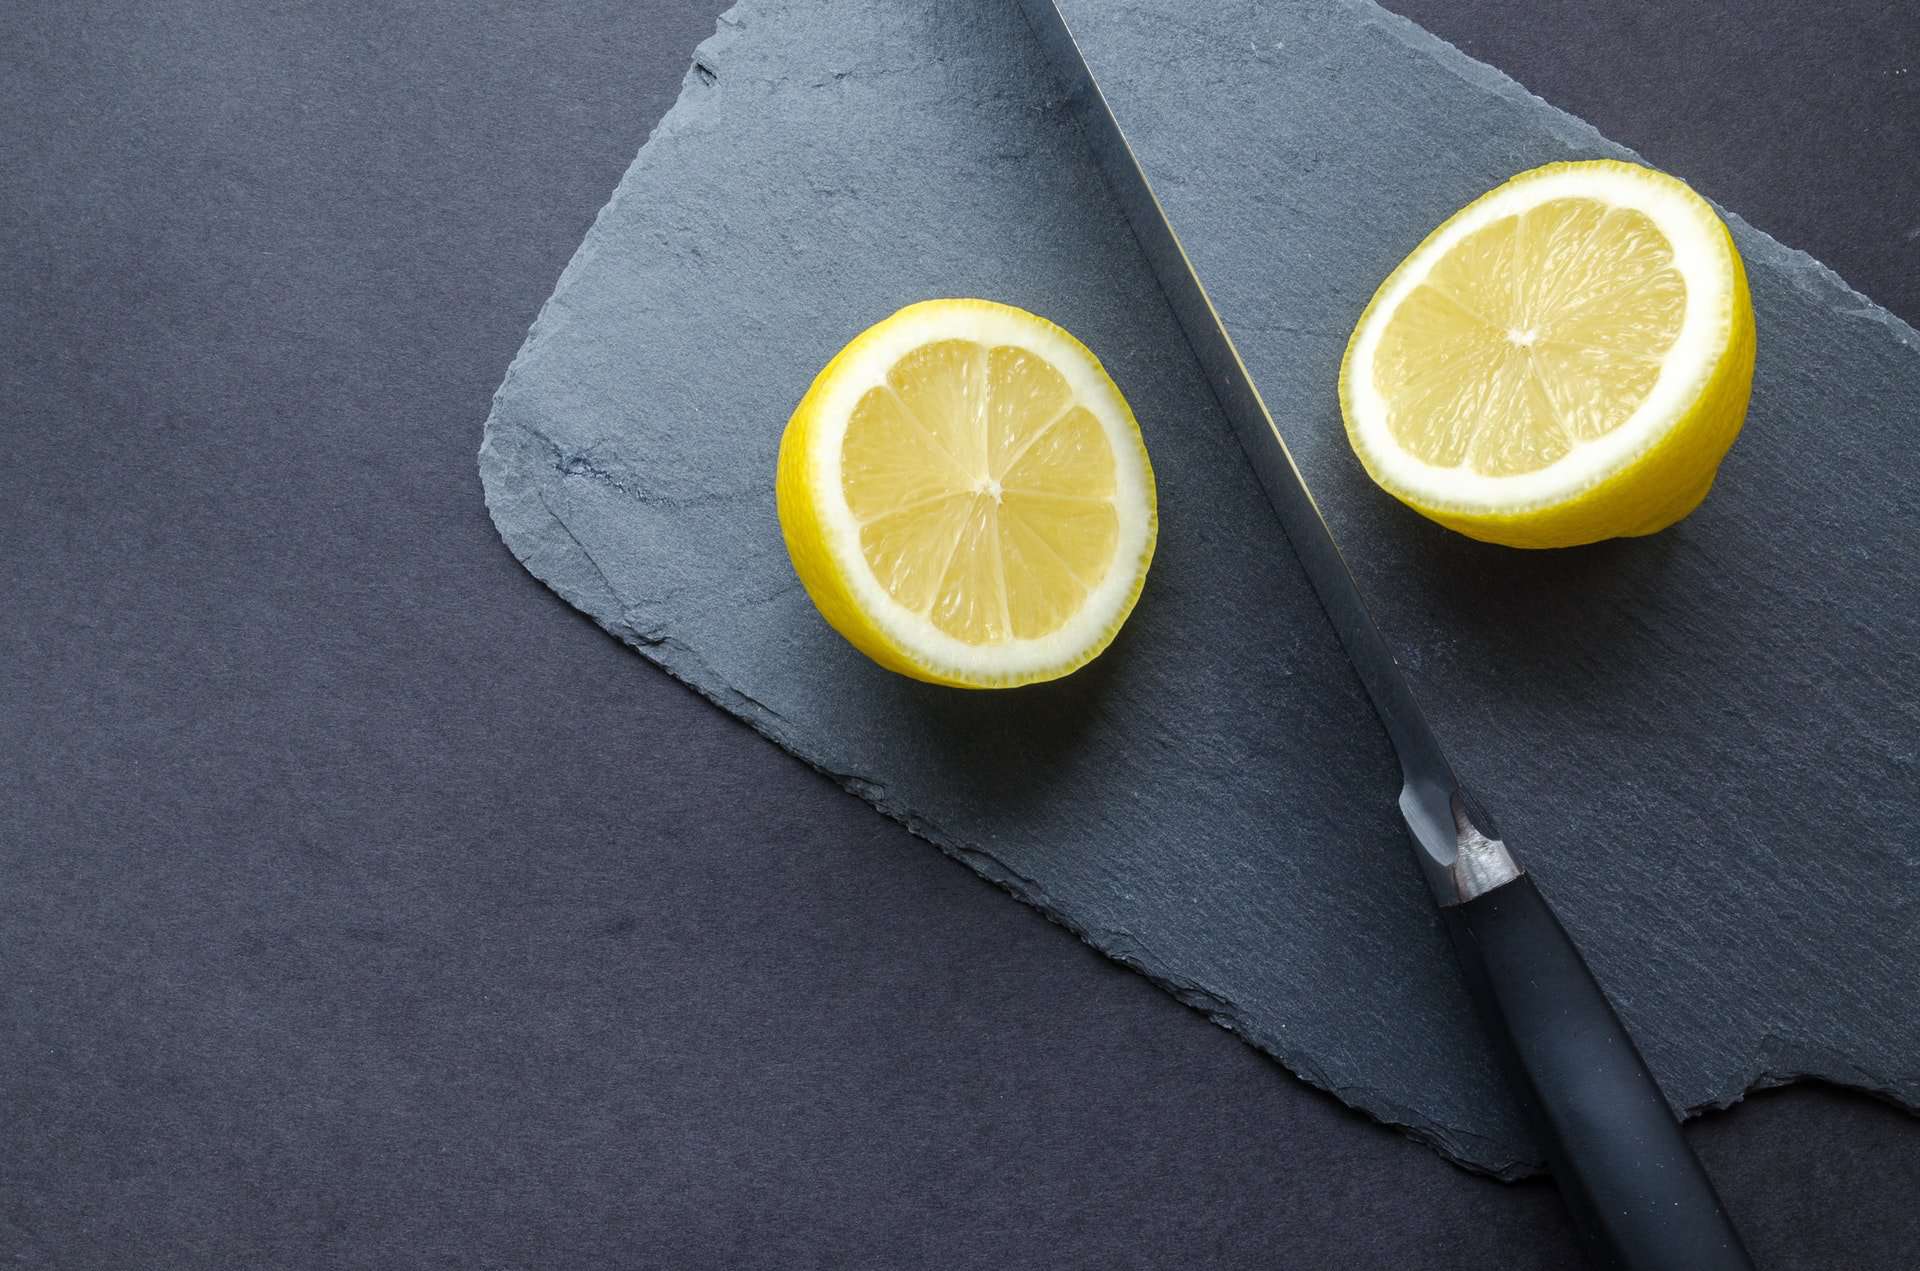 Cut Lemon In Half